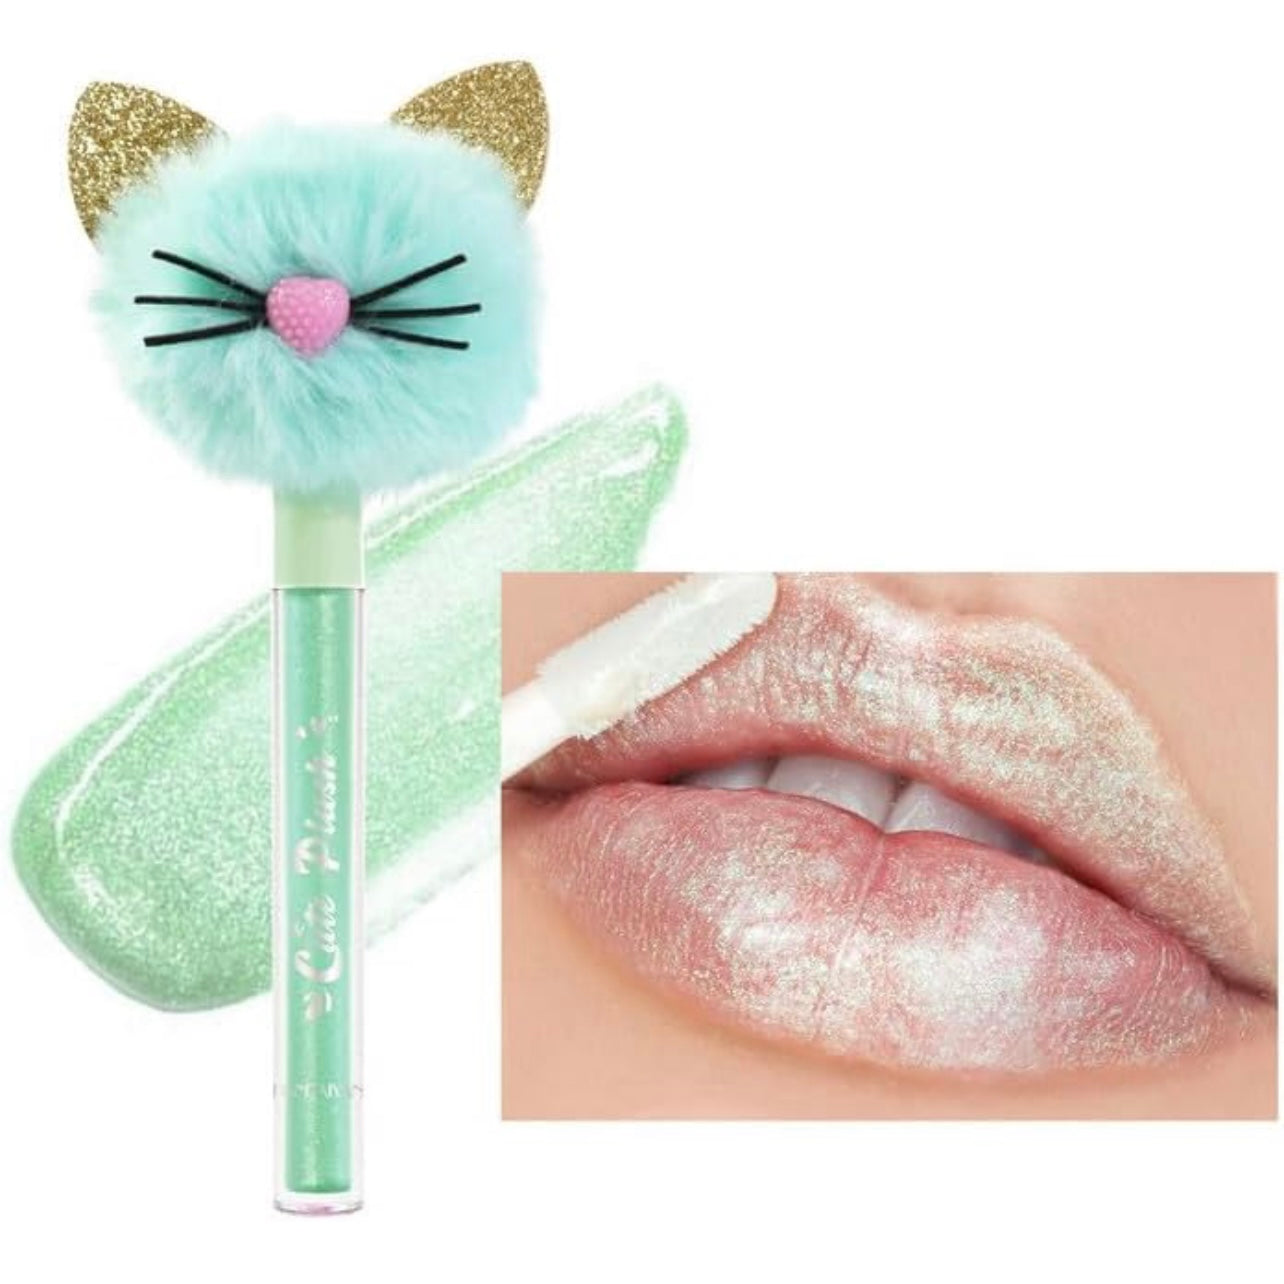 Adorno labial rellenador de labios con forma de diamante de gatito de peluche | Labios regordetes naturalmente | 4 colores pastel